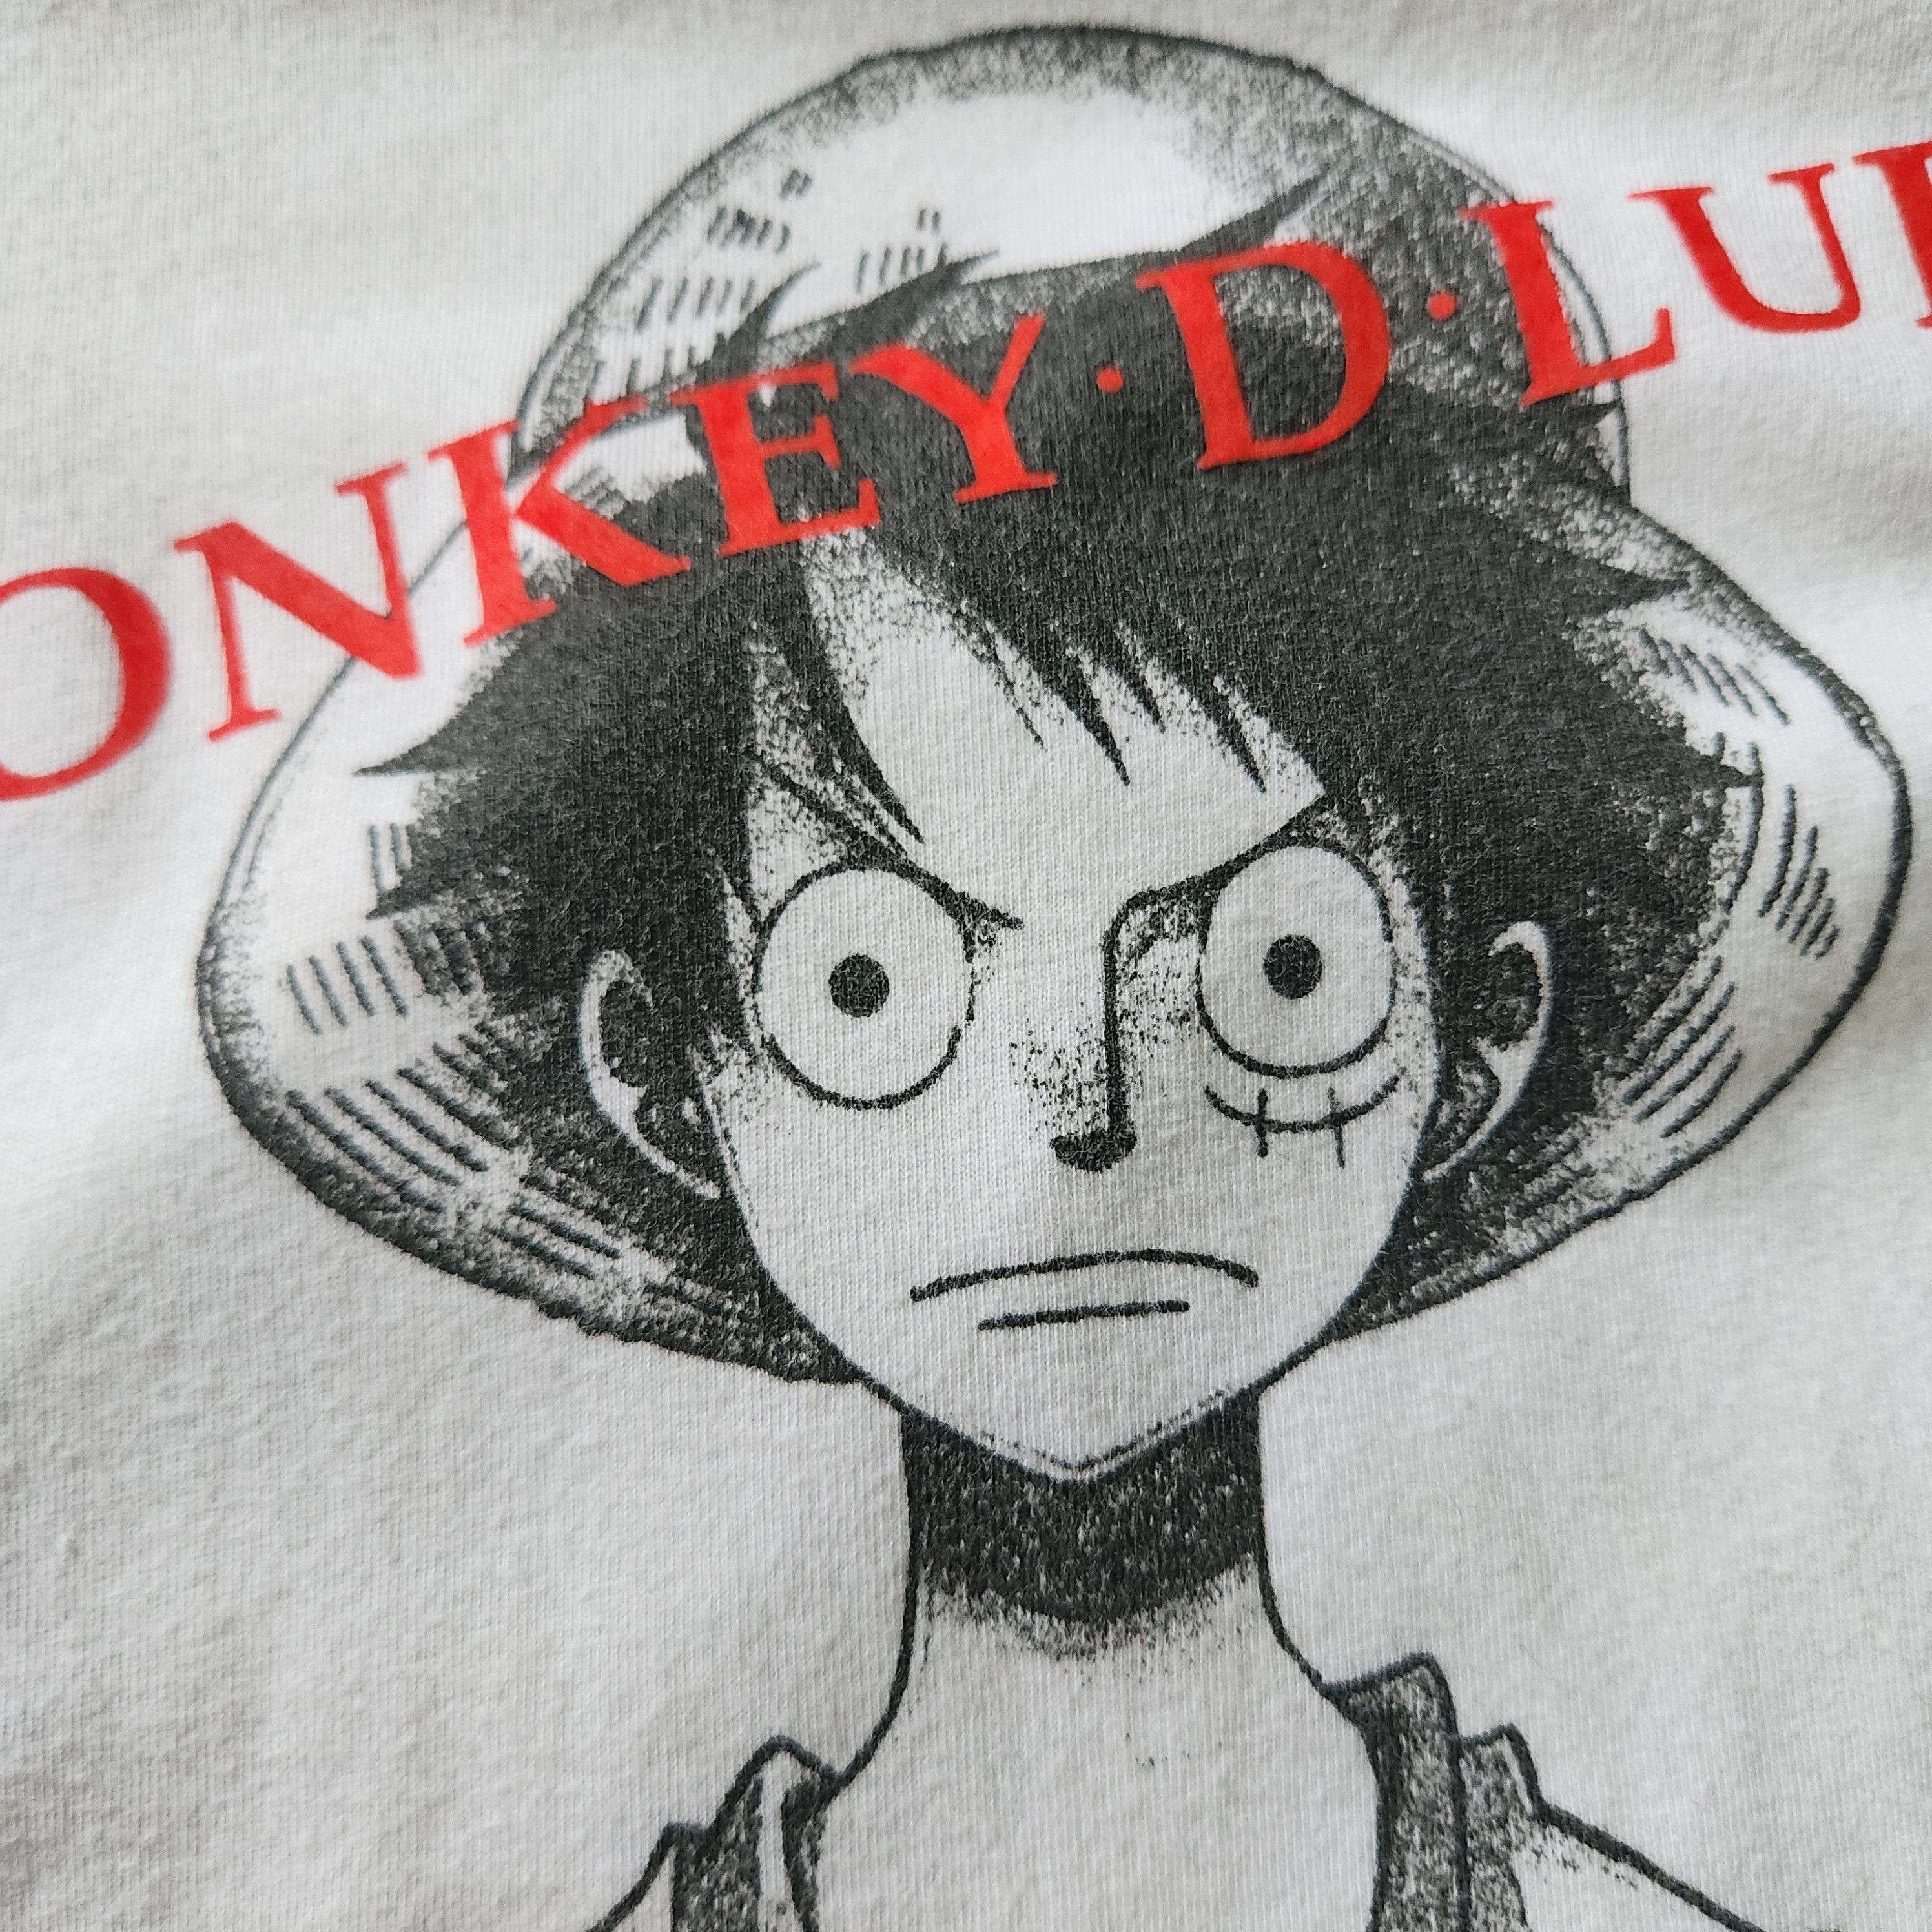 Uniqlo - One Piece Monkey D Luffy Big Printed TShirt - 8